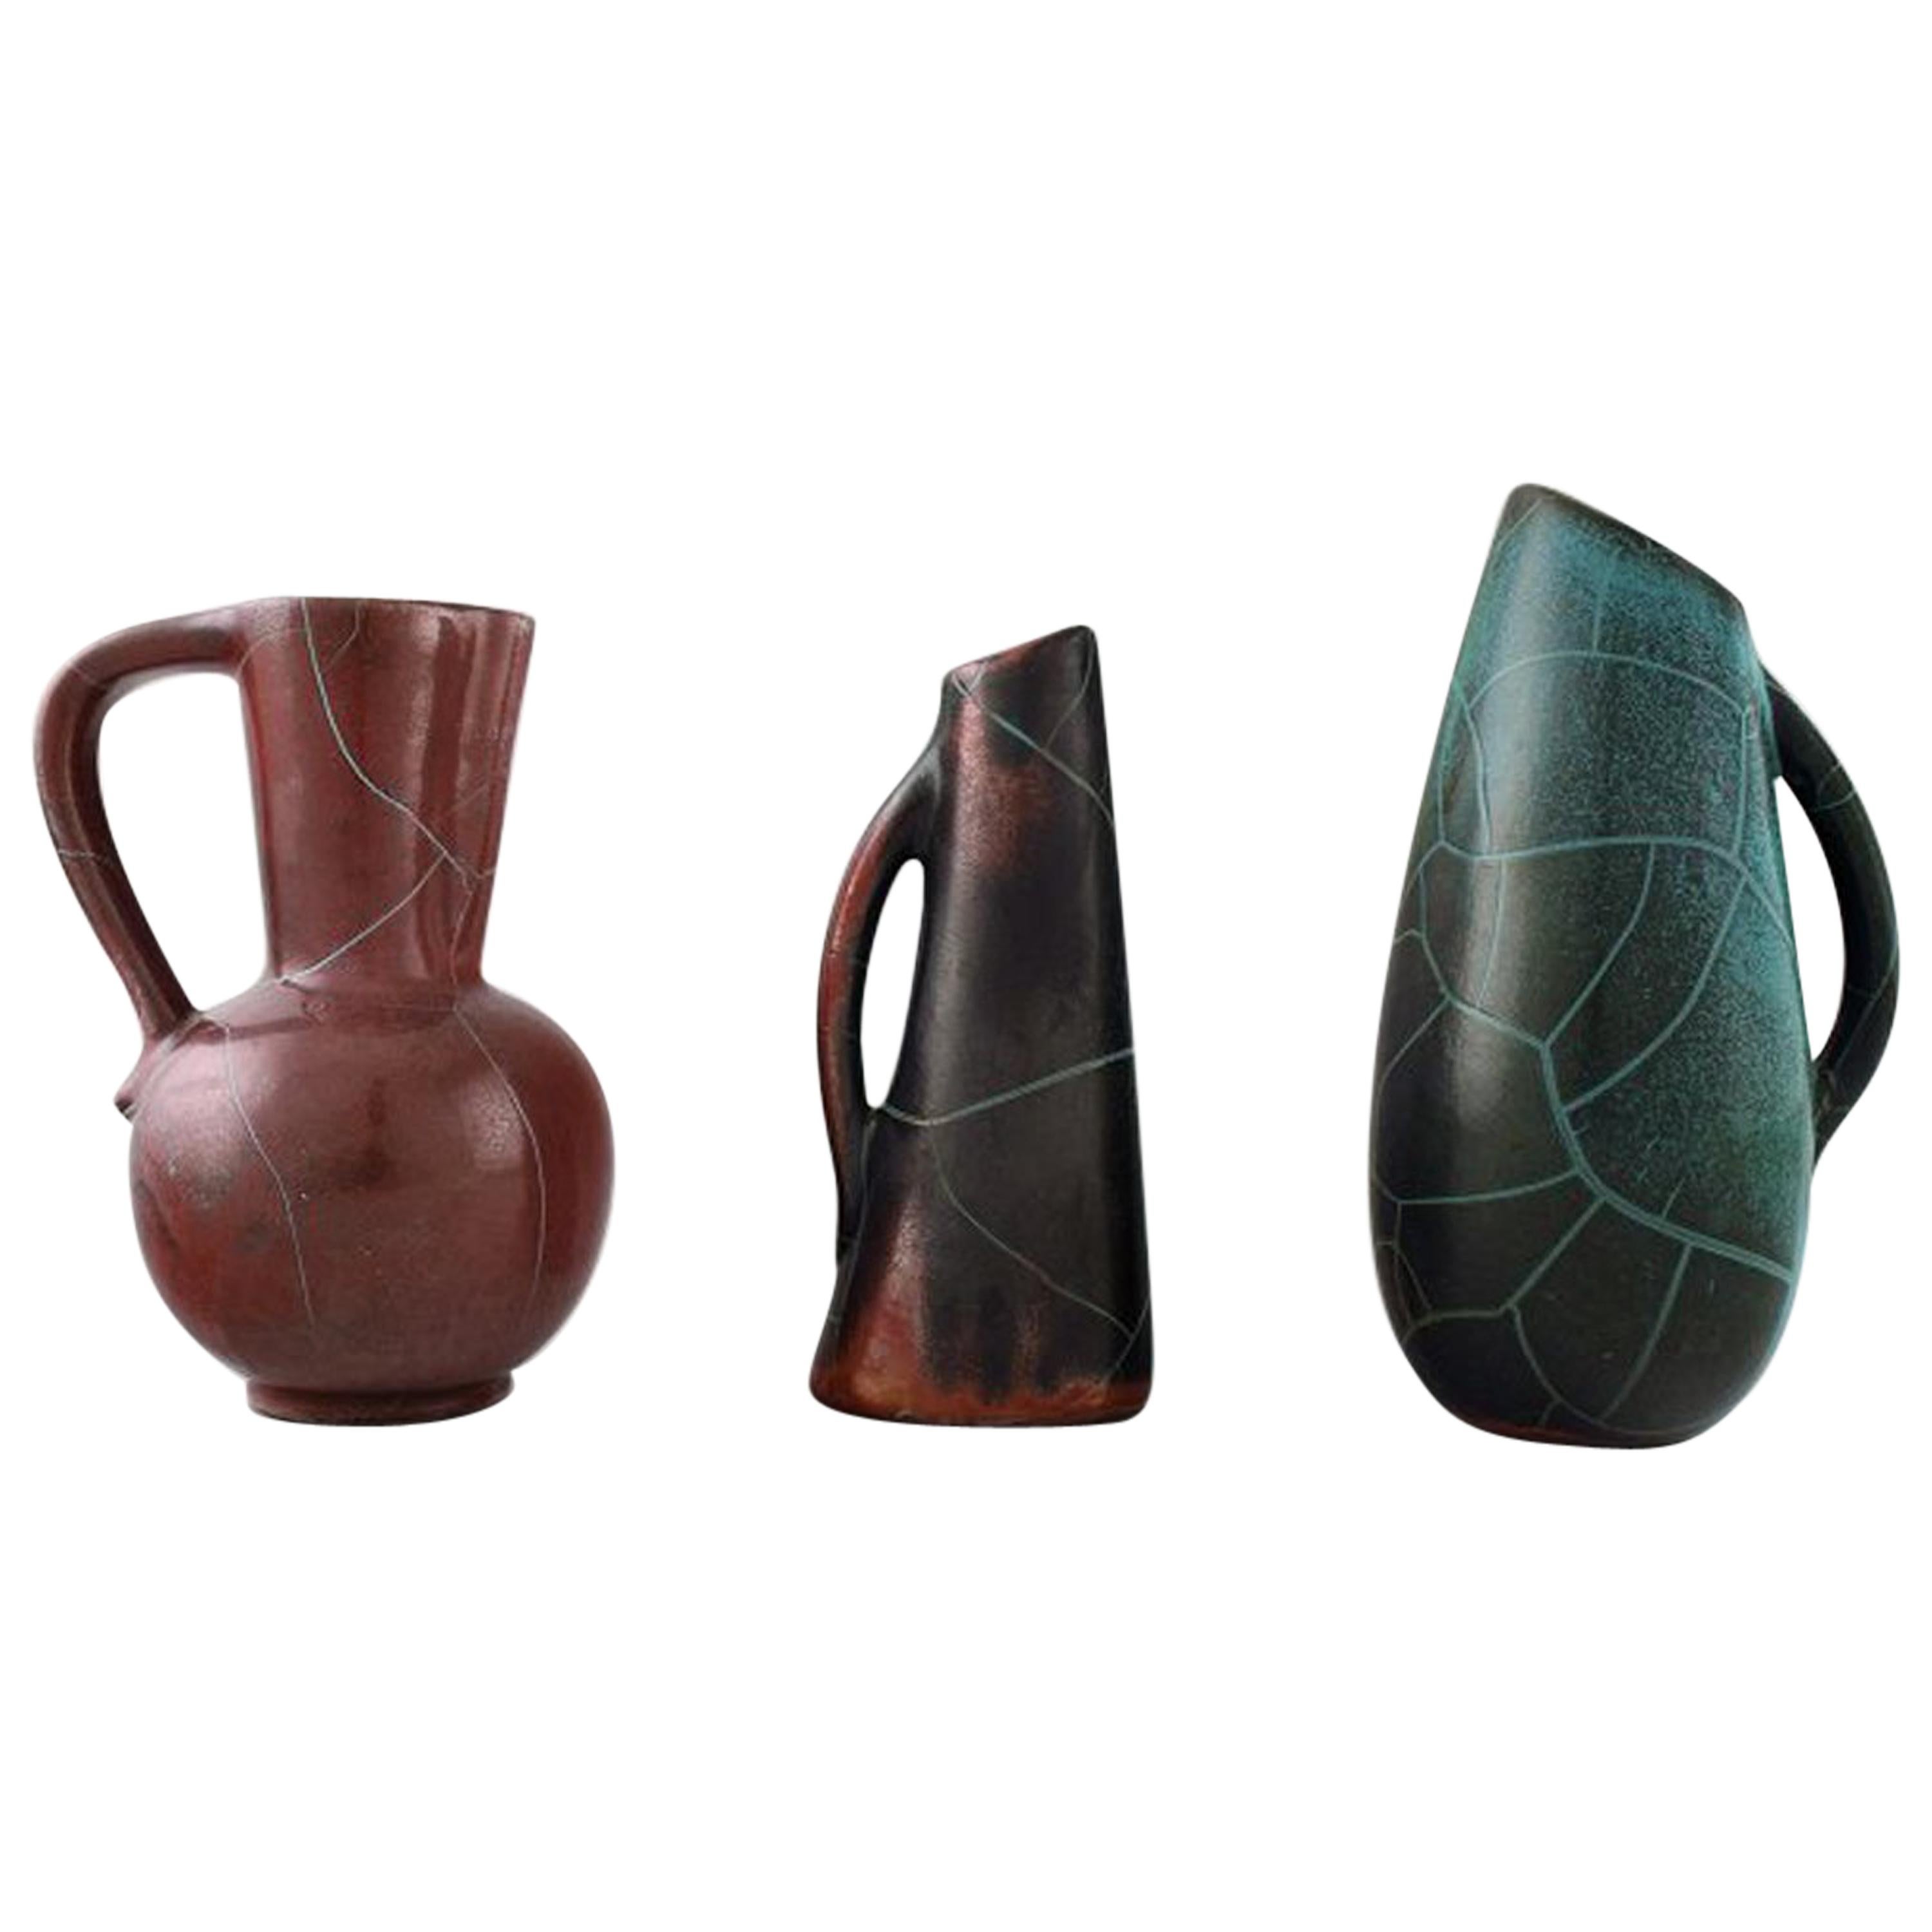 Richard Uhlemeyer, deutscher Keramiker, Kollektion von Keramikkrügen oder Vasen